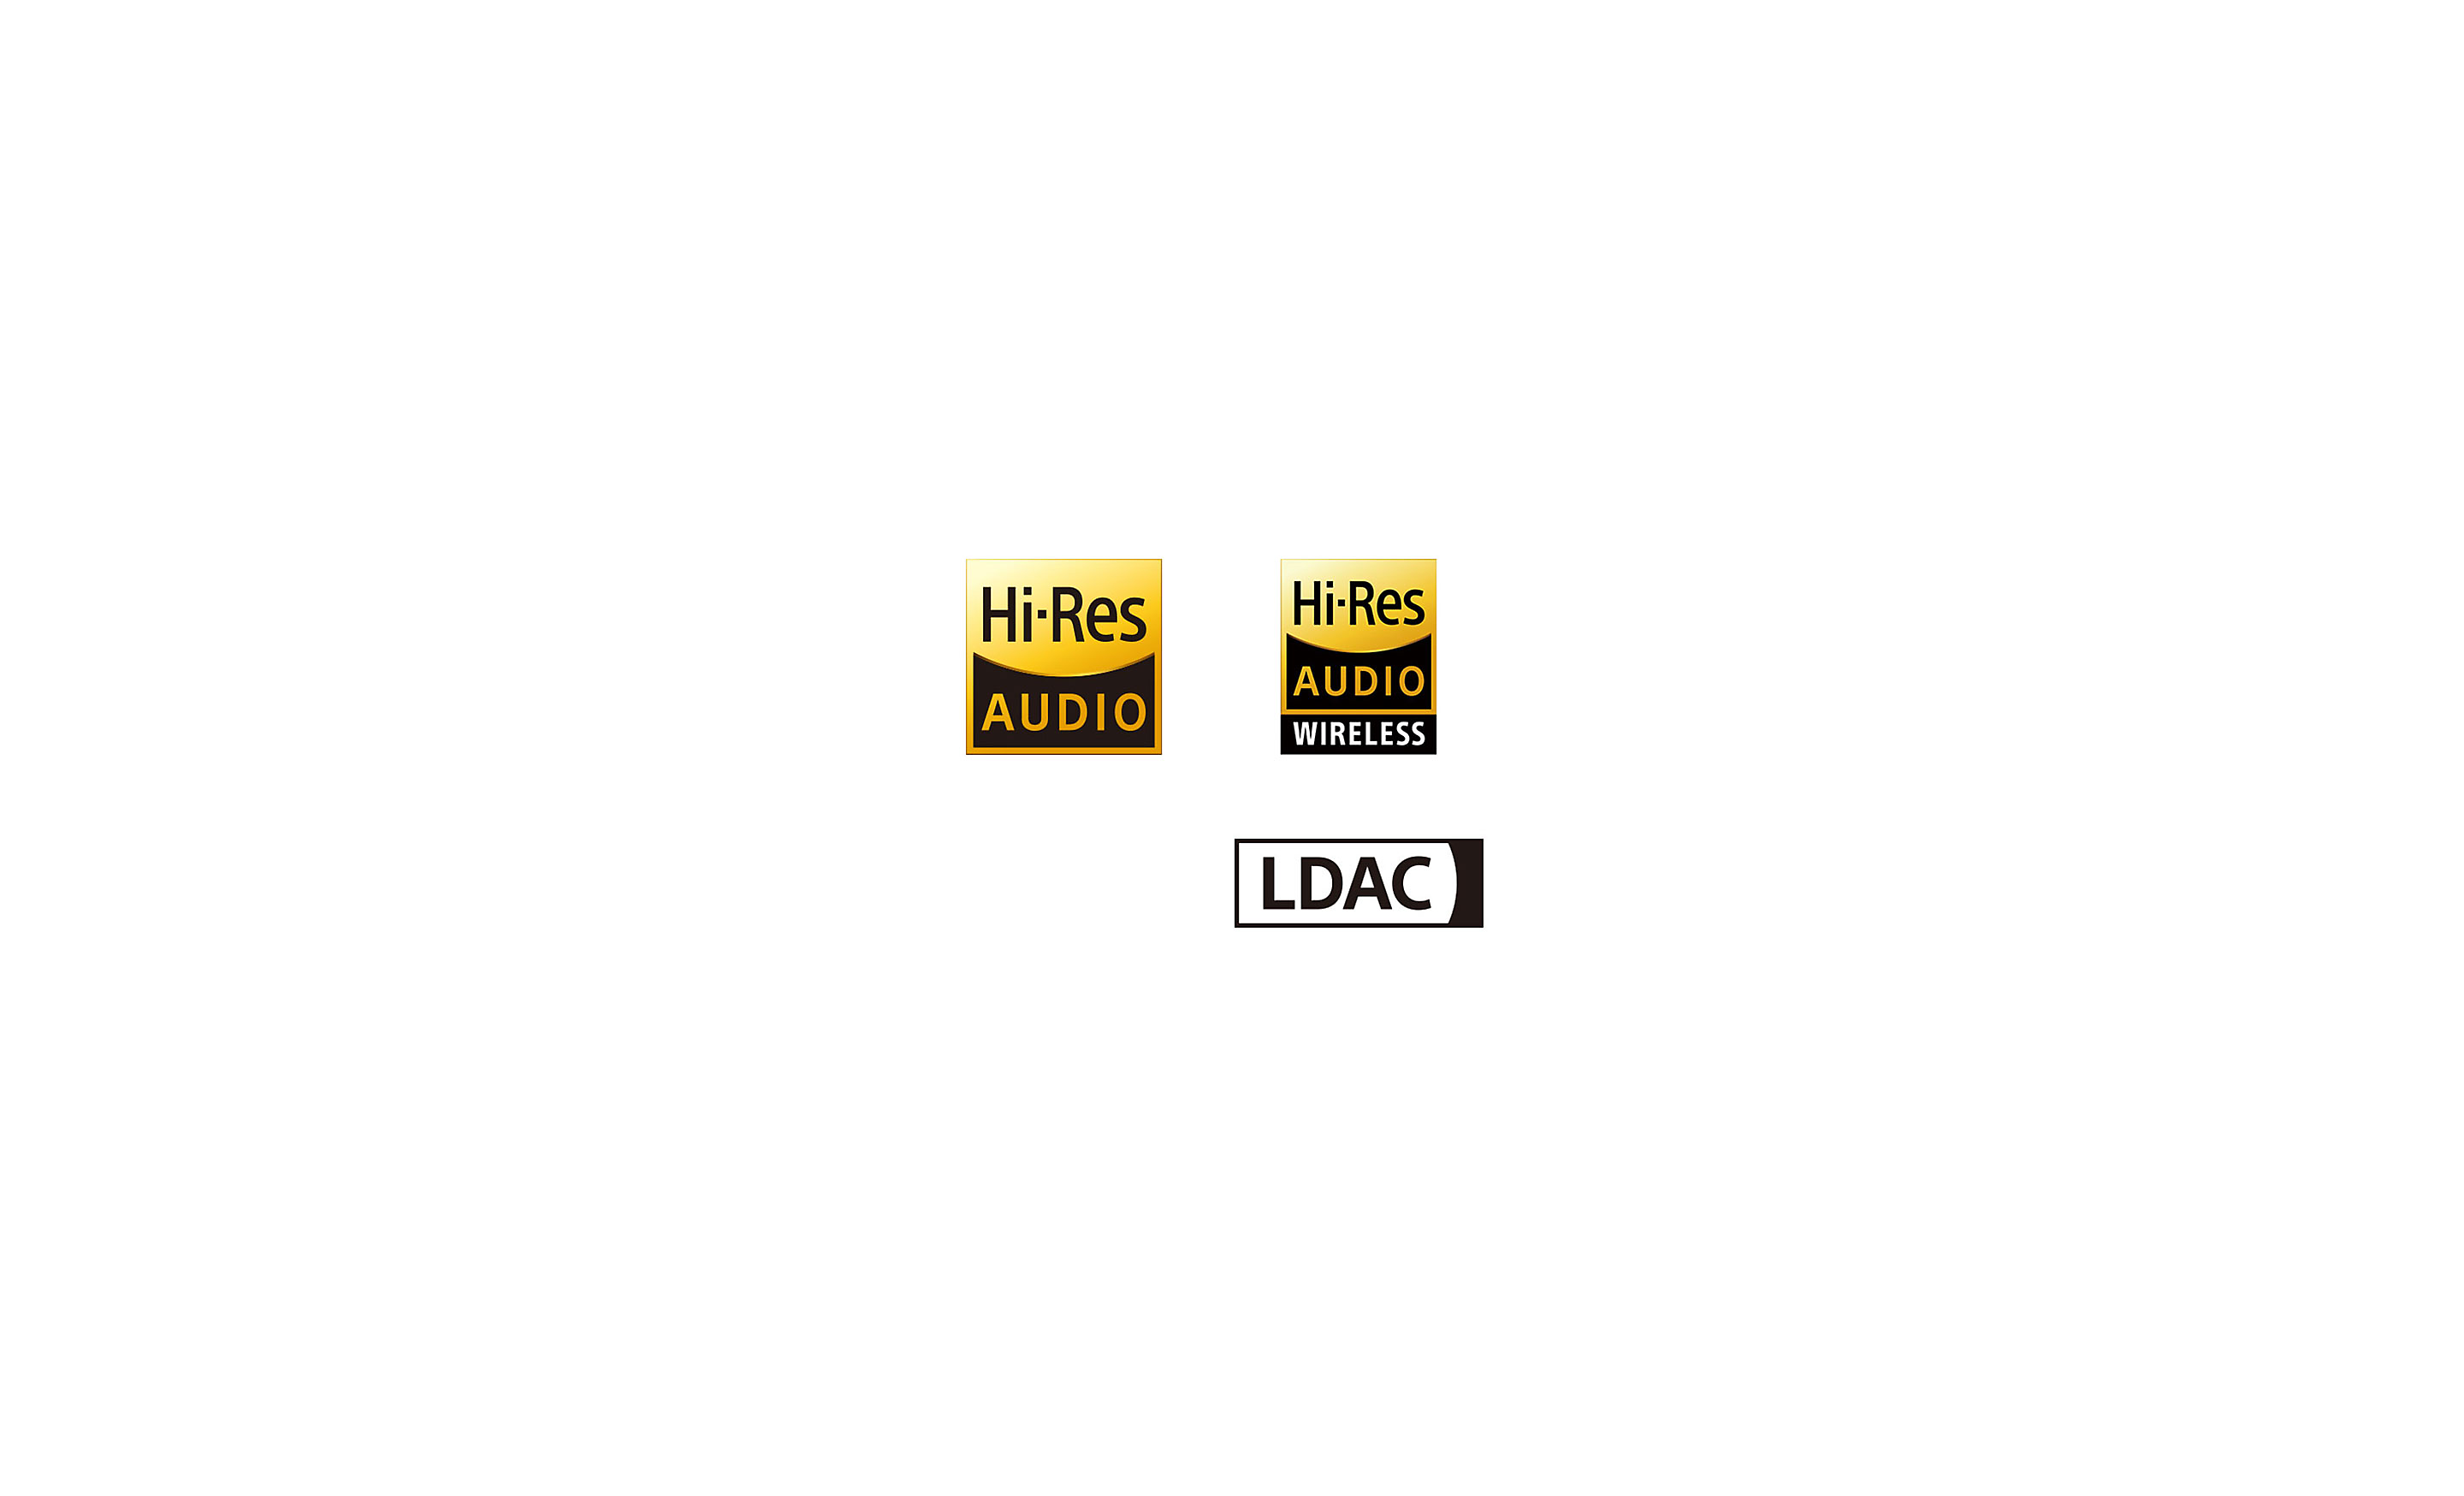 Logos von High-Resolution Audio, High-Resolution Audio Wireless und LDAC.